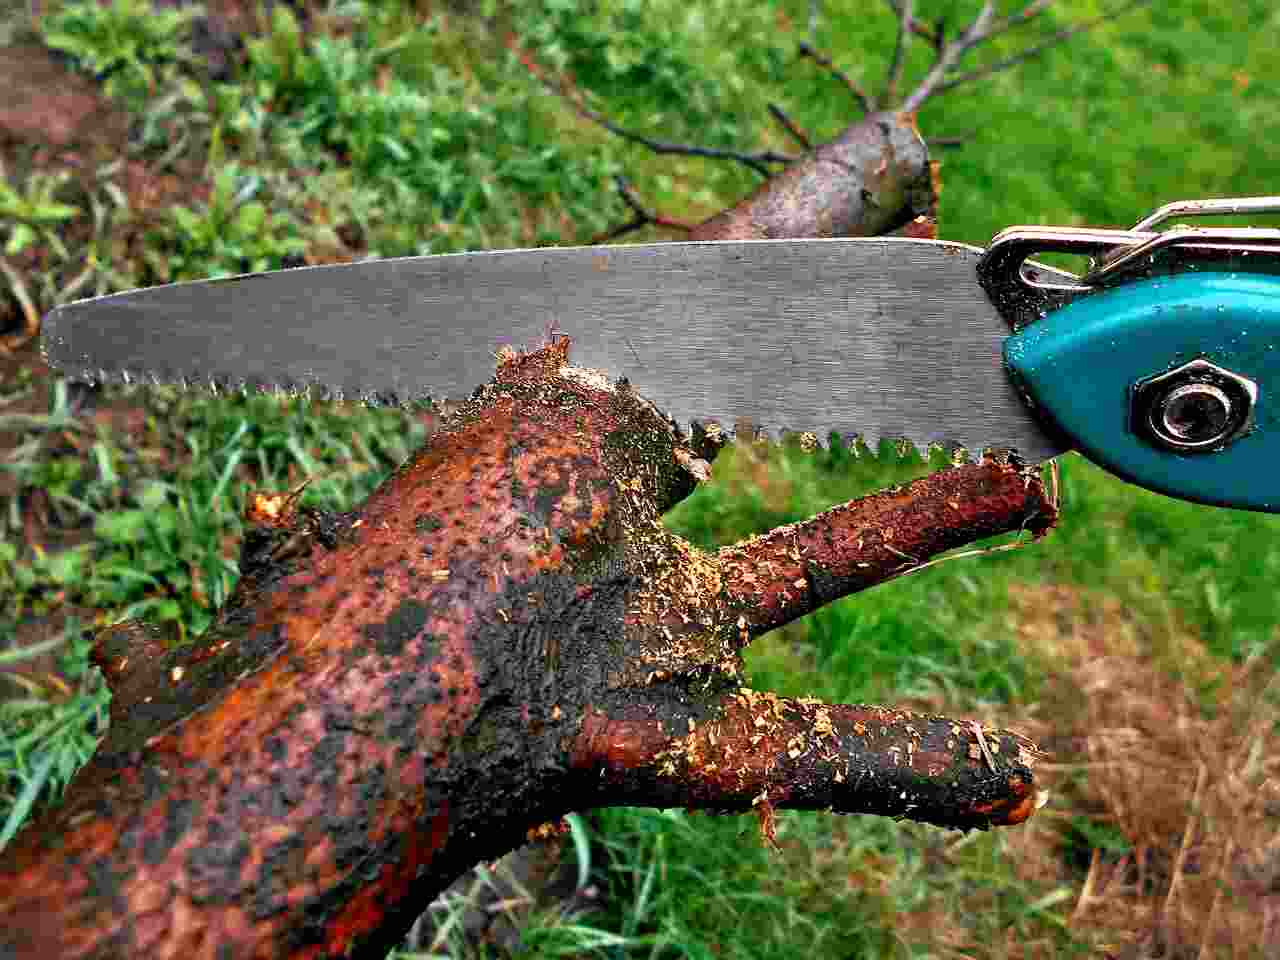 pruning saw